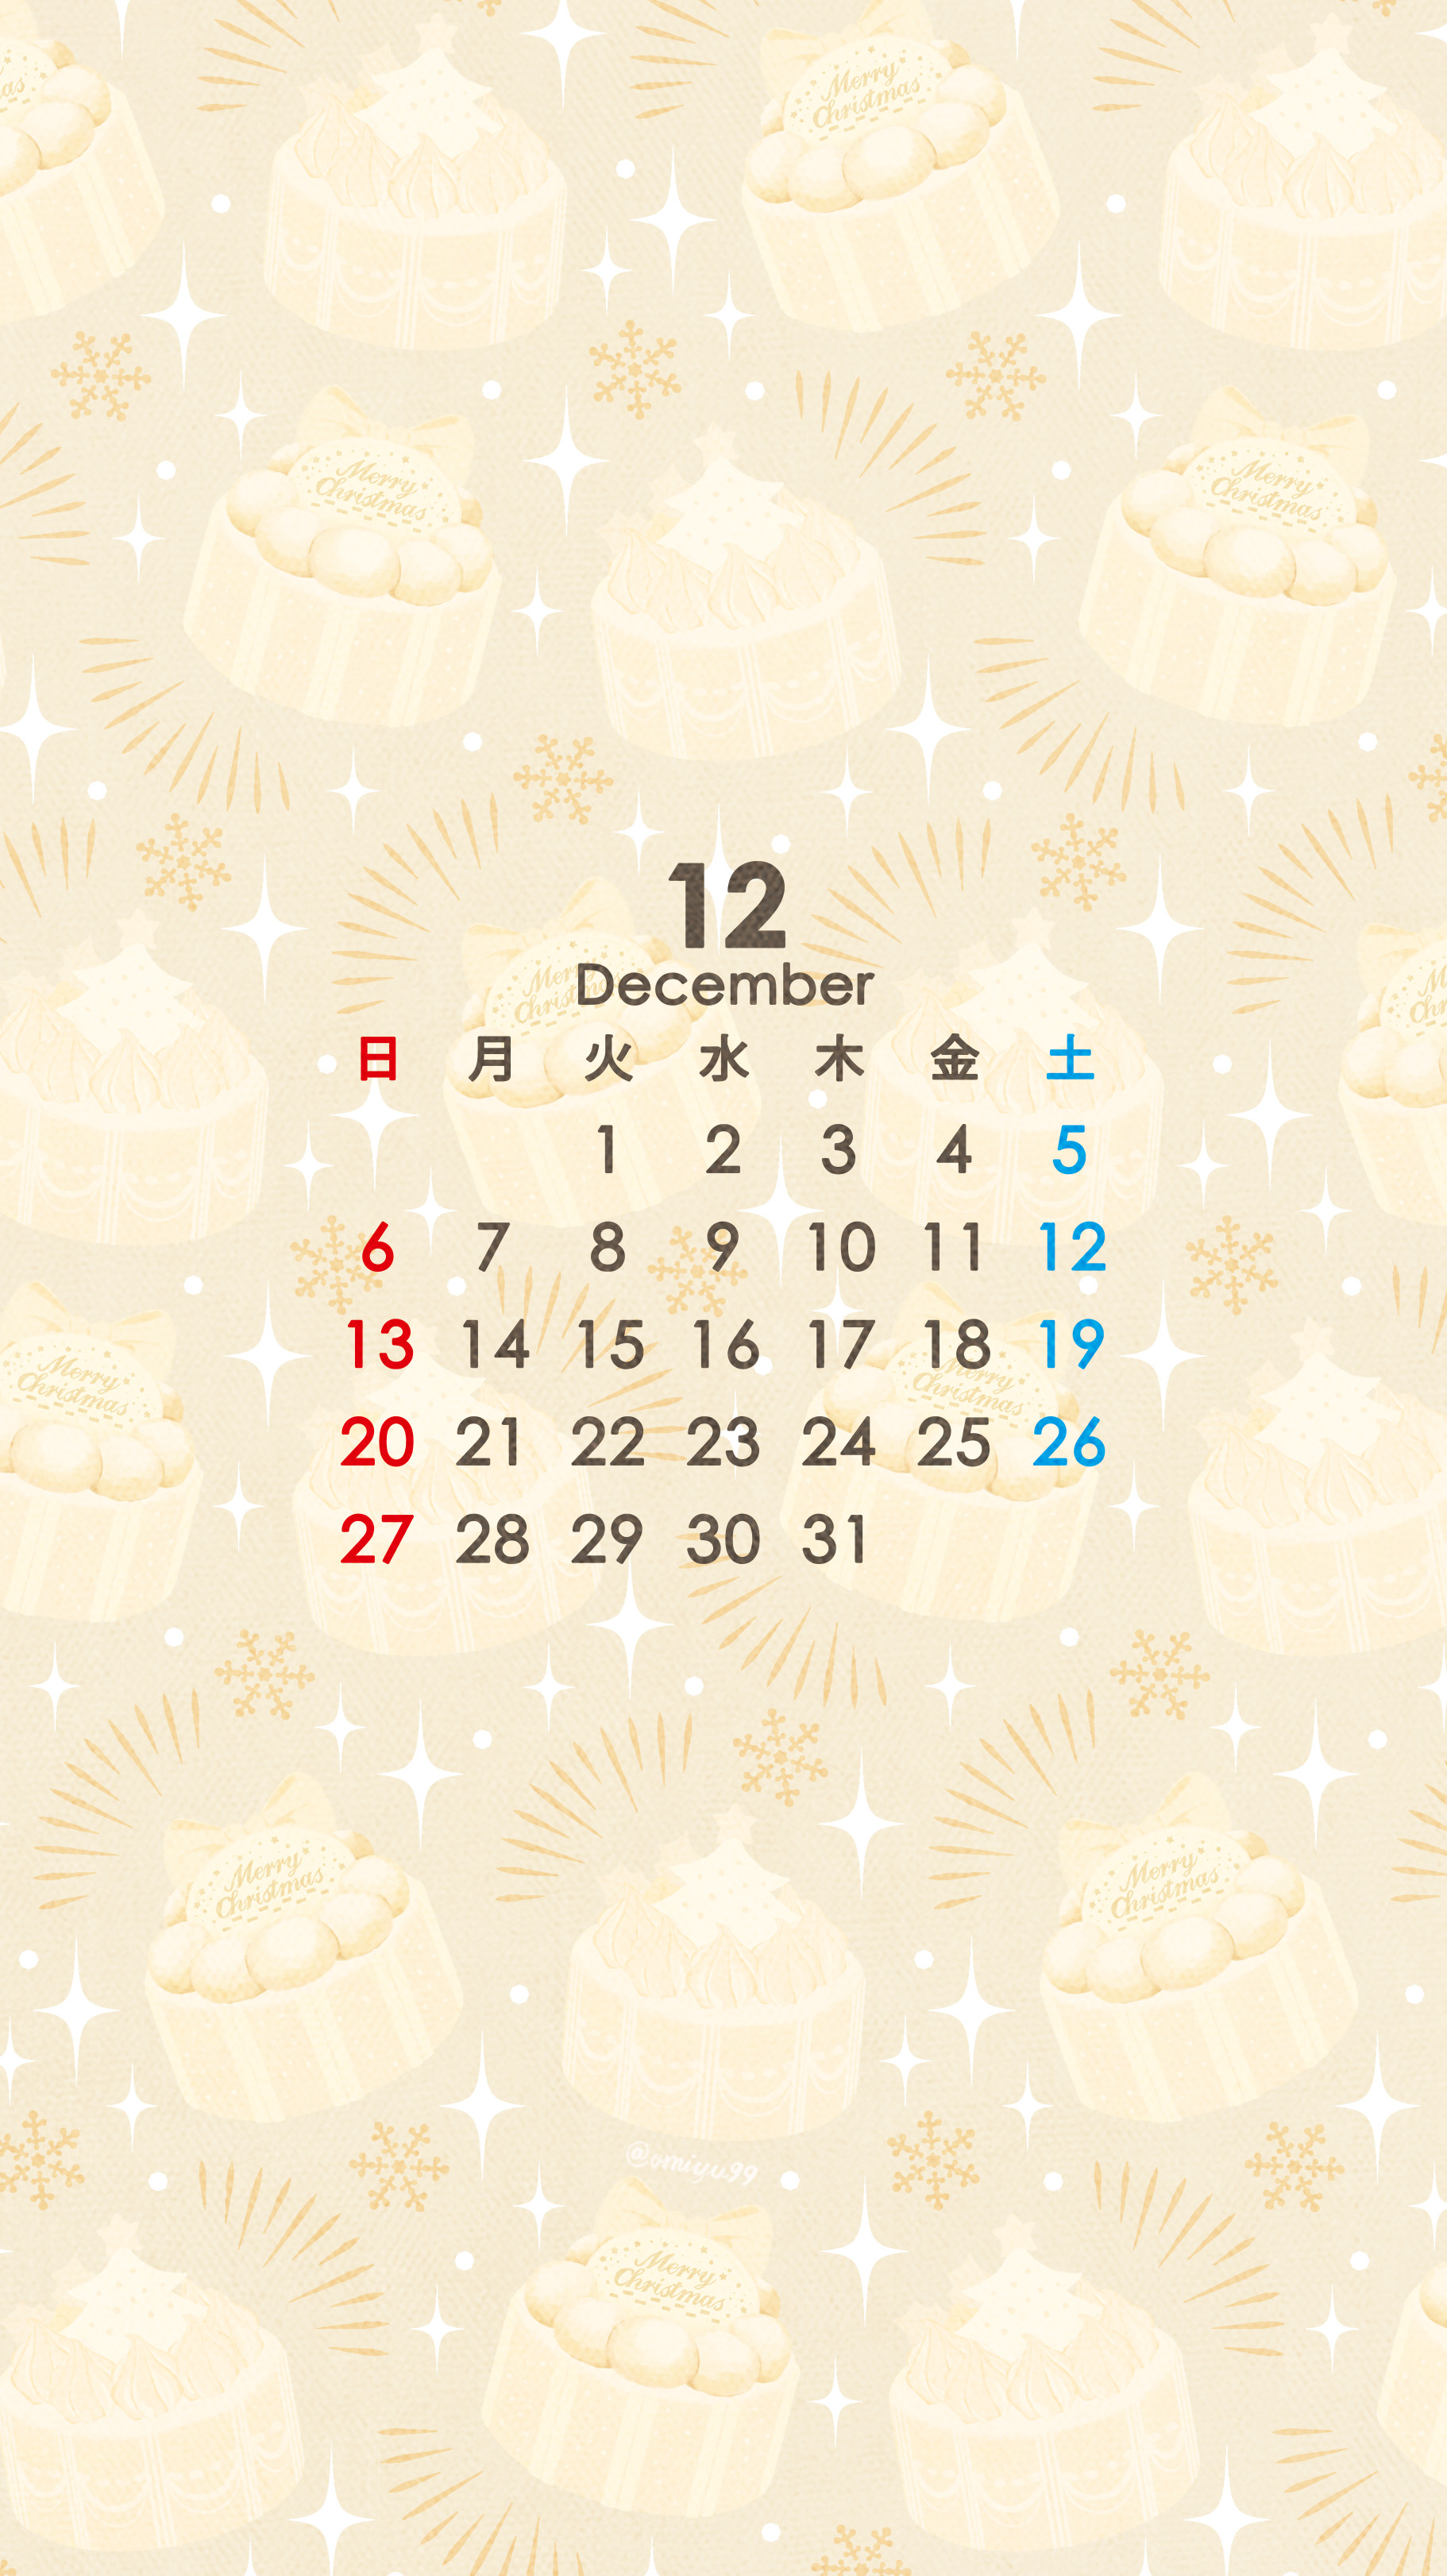 Omiyu お返事遅くなります クリスマスケーキな壁紙カレンダー 年12月 Illust Illustration 壁紙 イラスト Iphone壁紙 クリスマス Christmas ケーキ Cake 食べ物 カレンダー 今年もあと一ヶ月しかないんですね 早い T Co